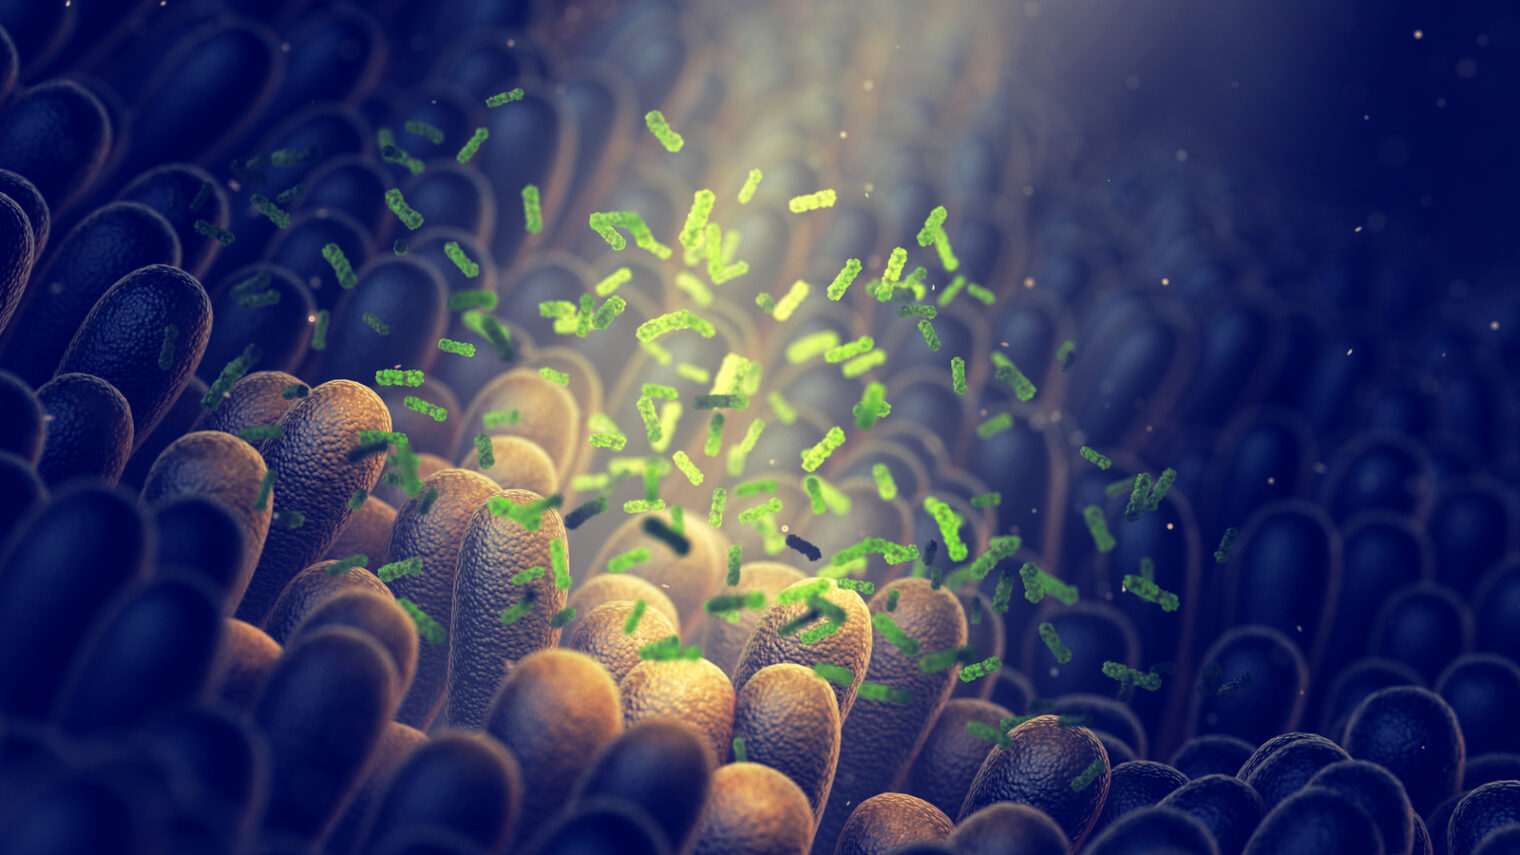 Image of gut microbiome via Shutterstock.com